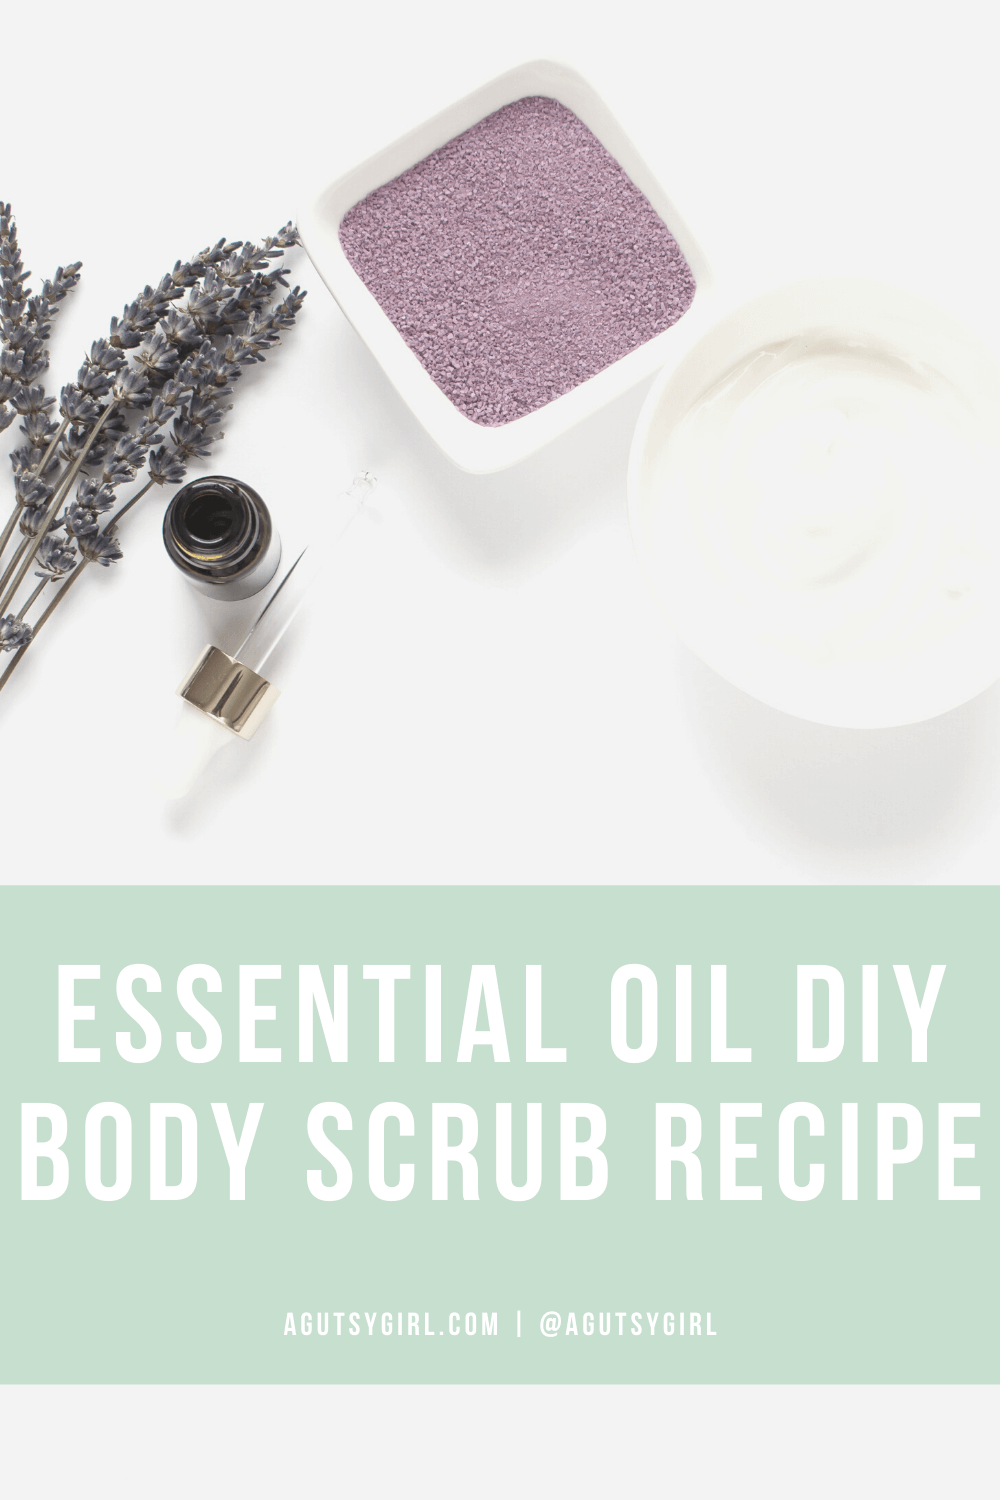 Essential Oil DIY Body Scrub Recipe agutsygirl.com #diy #bodyscrub #essentialoils #nontoxic